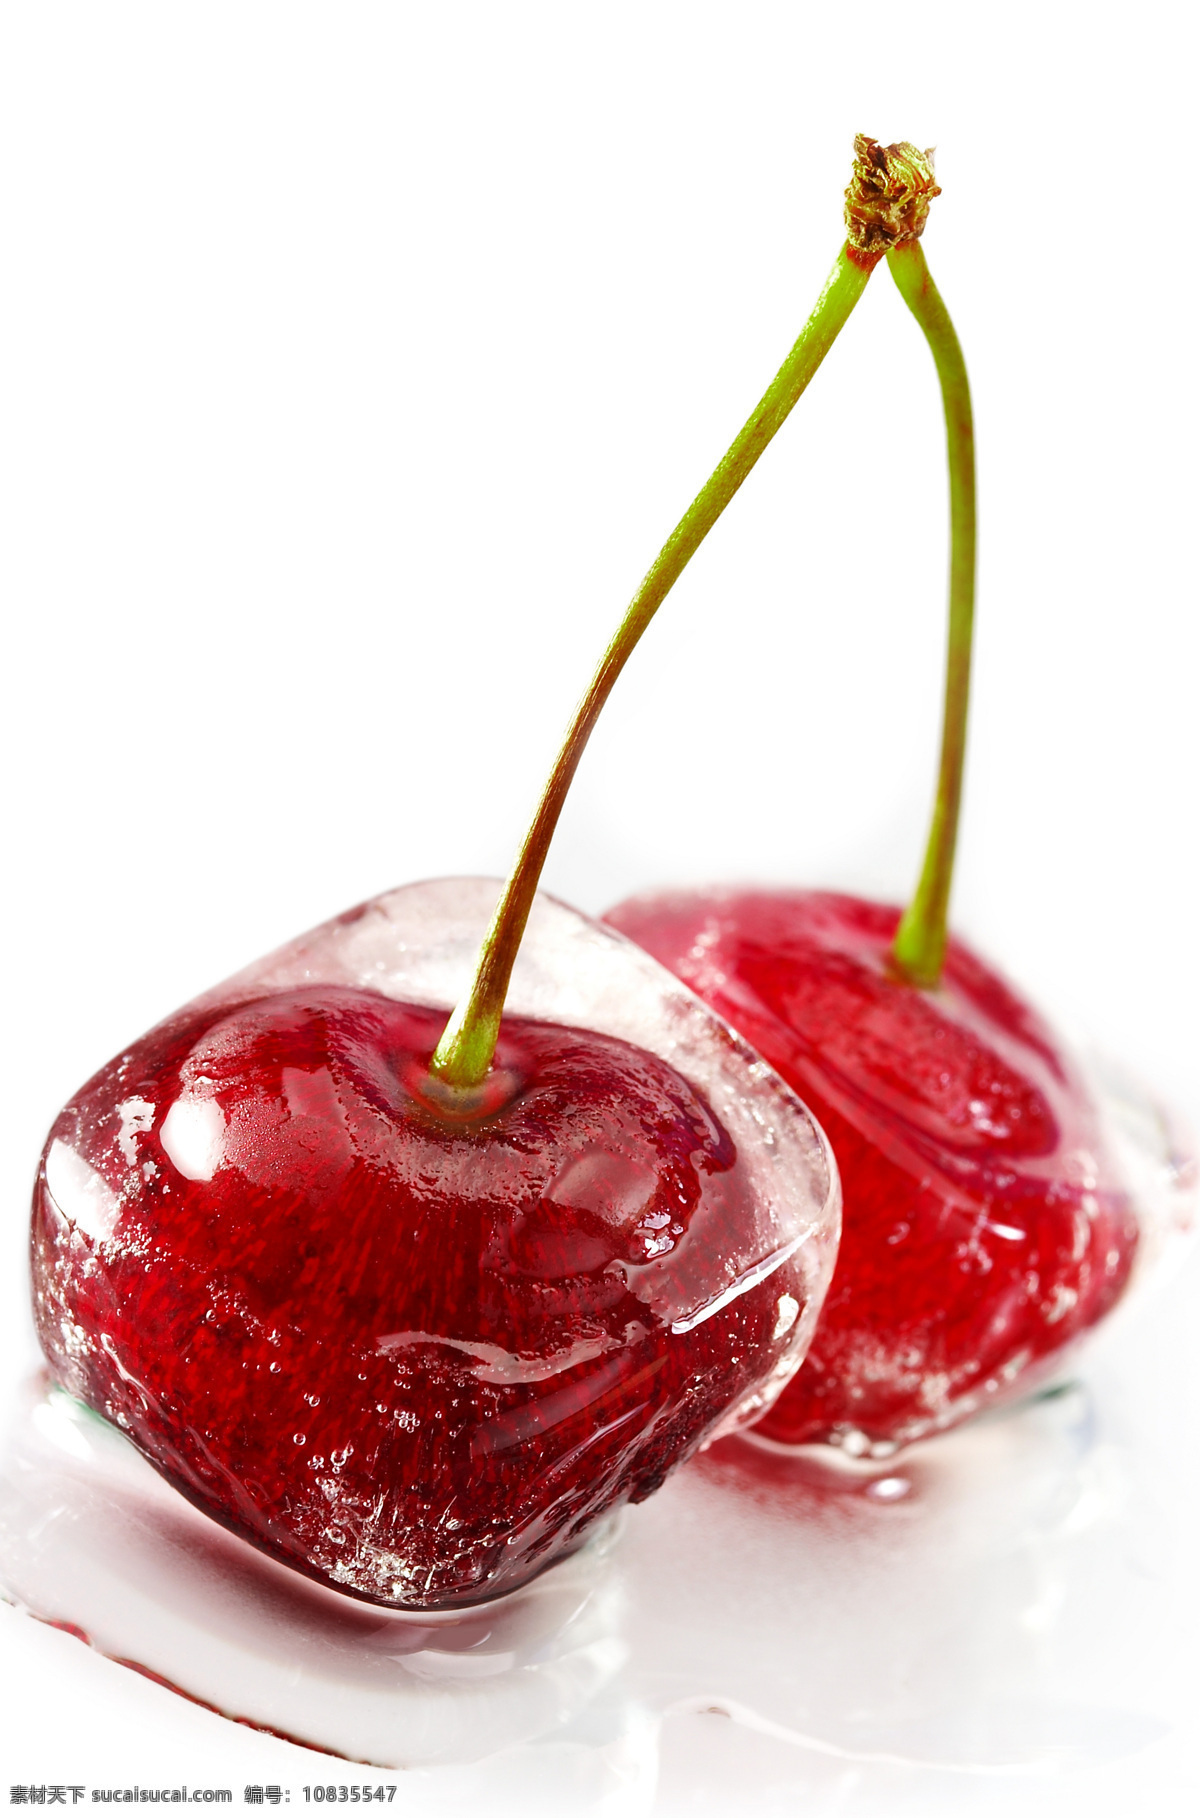 水果 心形 冰块 樱桃形状 爱情 红心 情人节素材 3d作品 3d 物品 冰块图片 生活百科